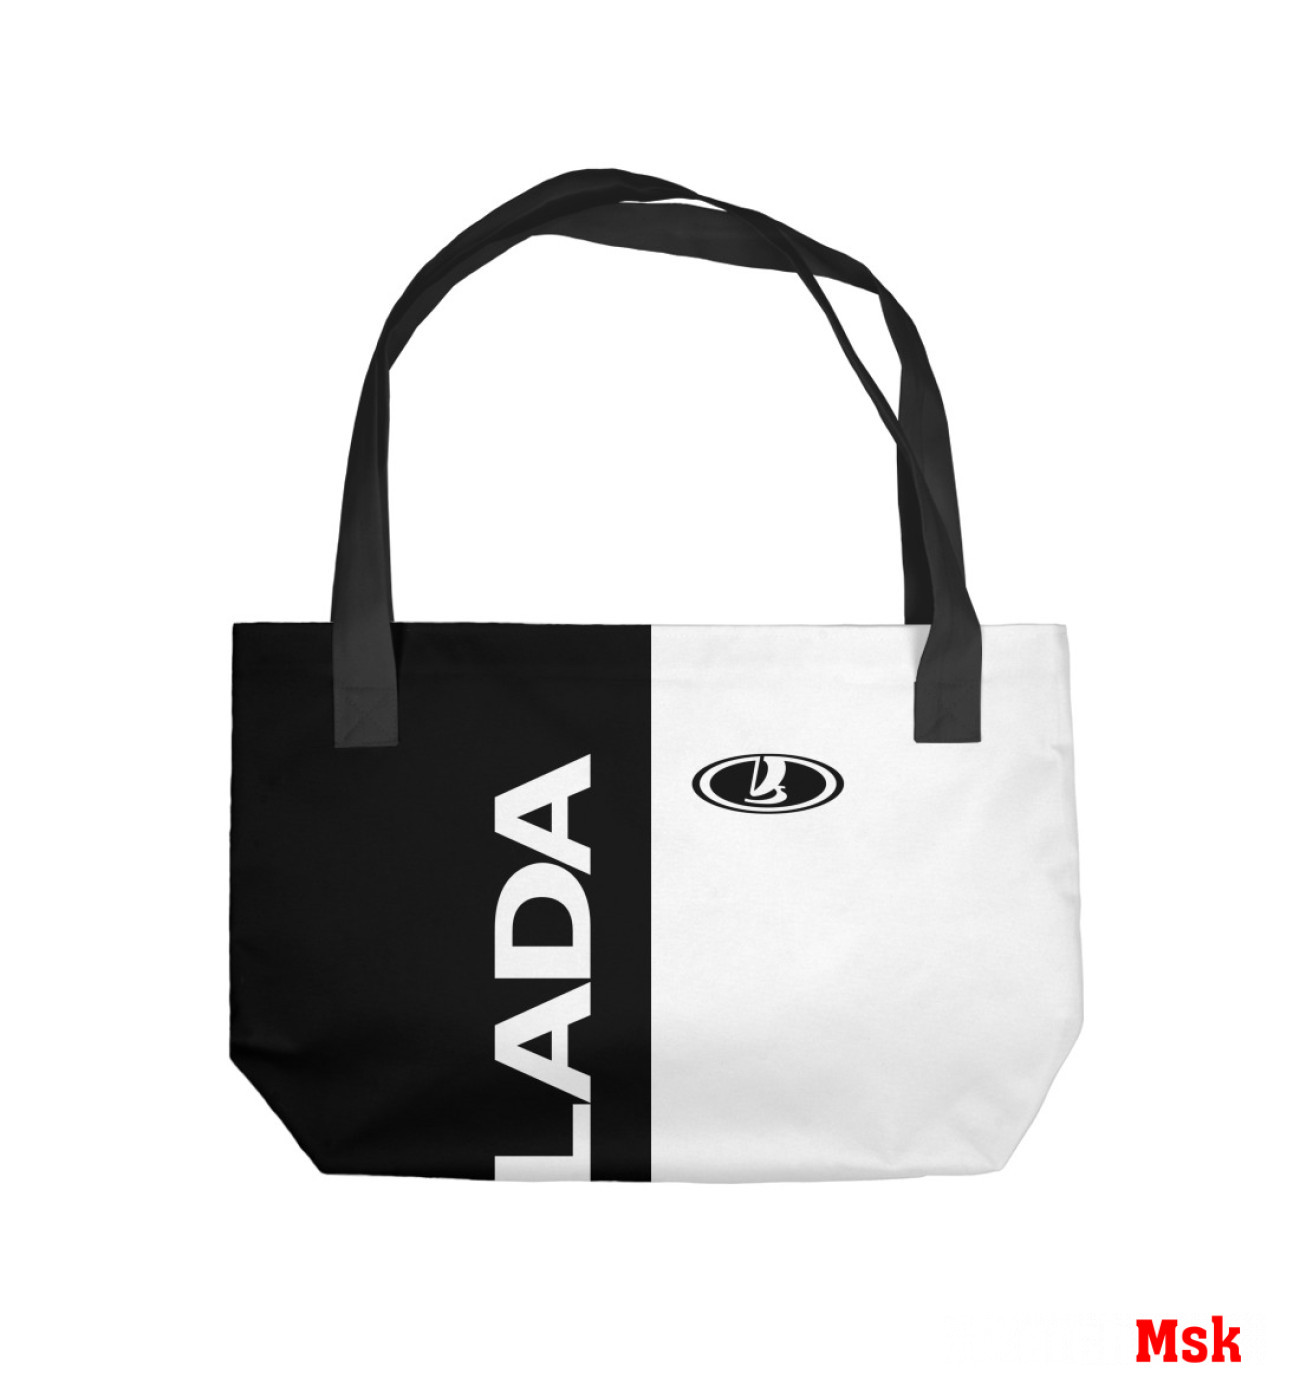 Пляжная сумка Lada, артикул: LAD-383464-sup